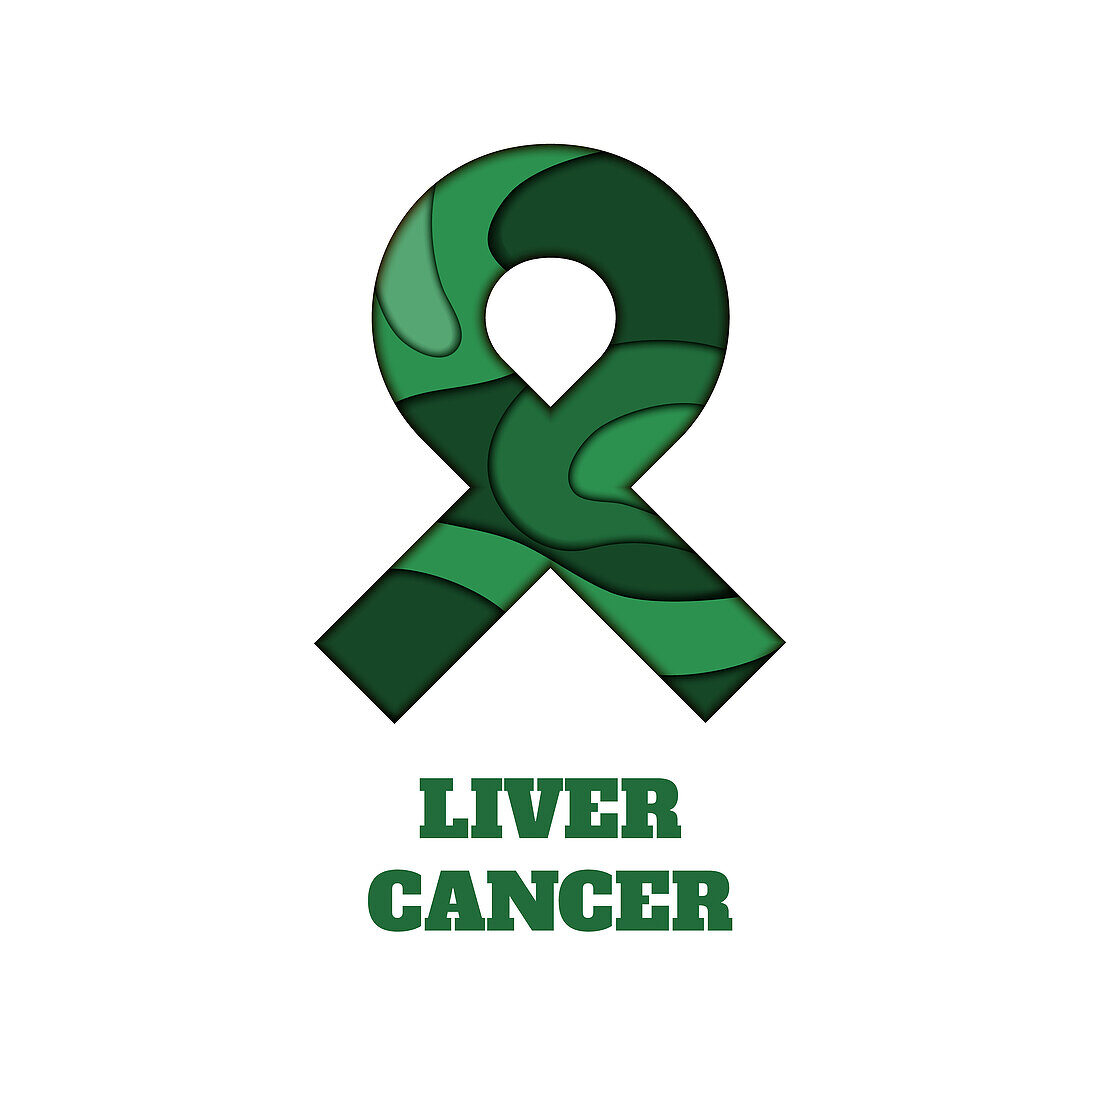 Liver cancer awareness, illustration